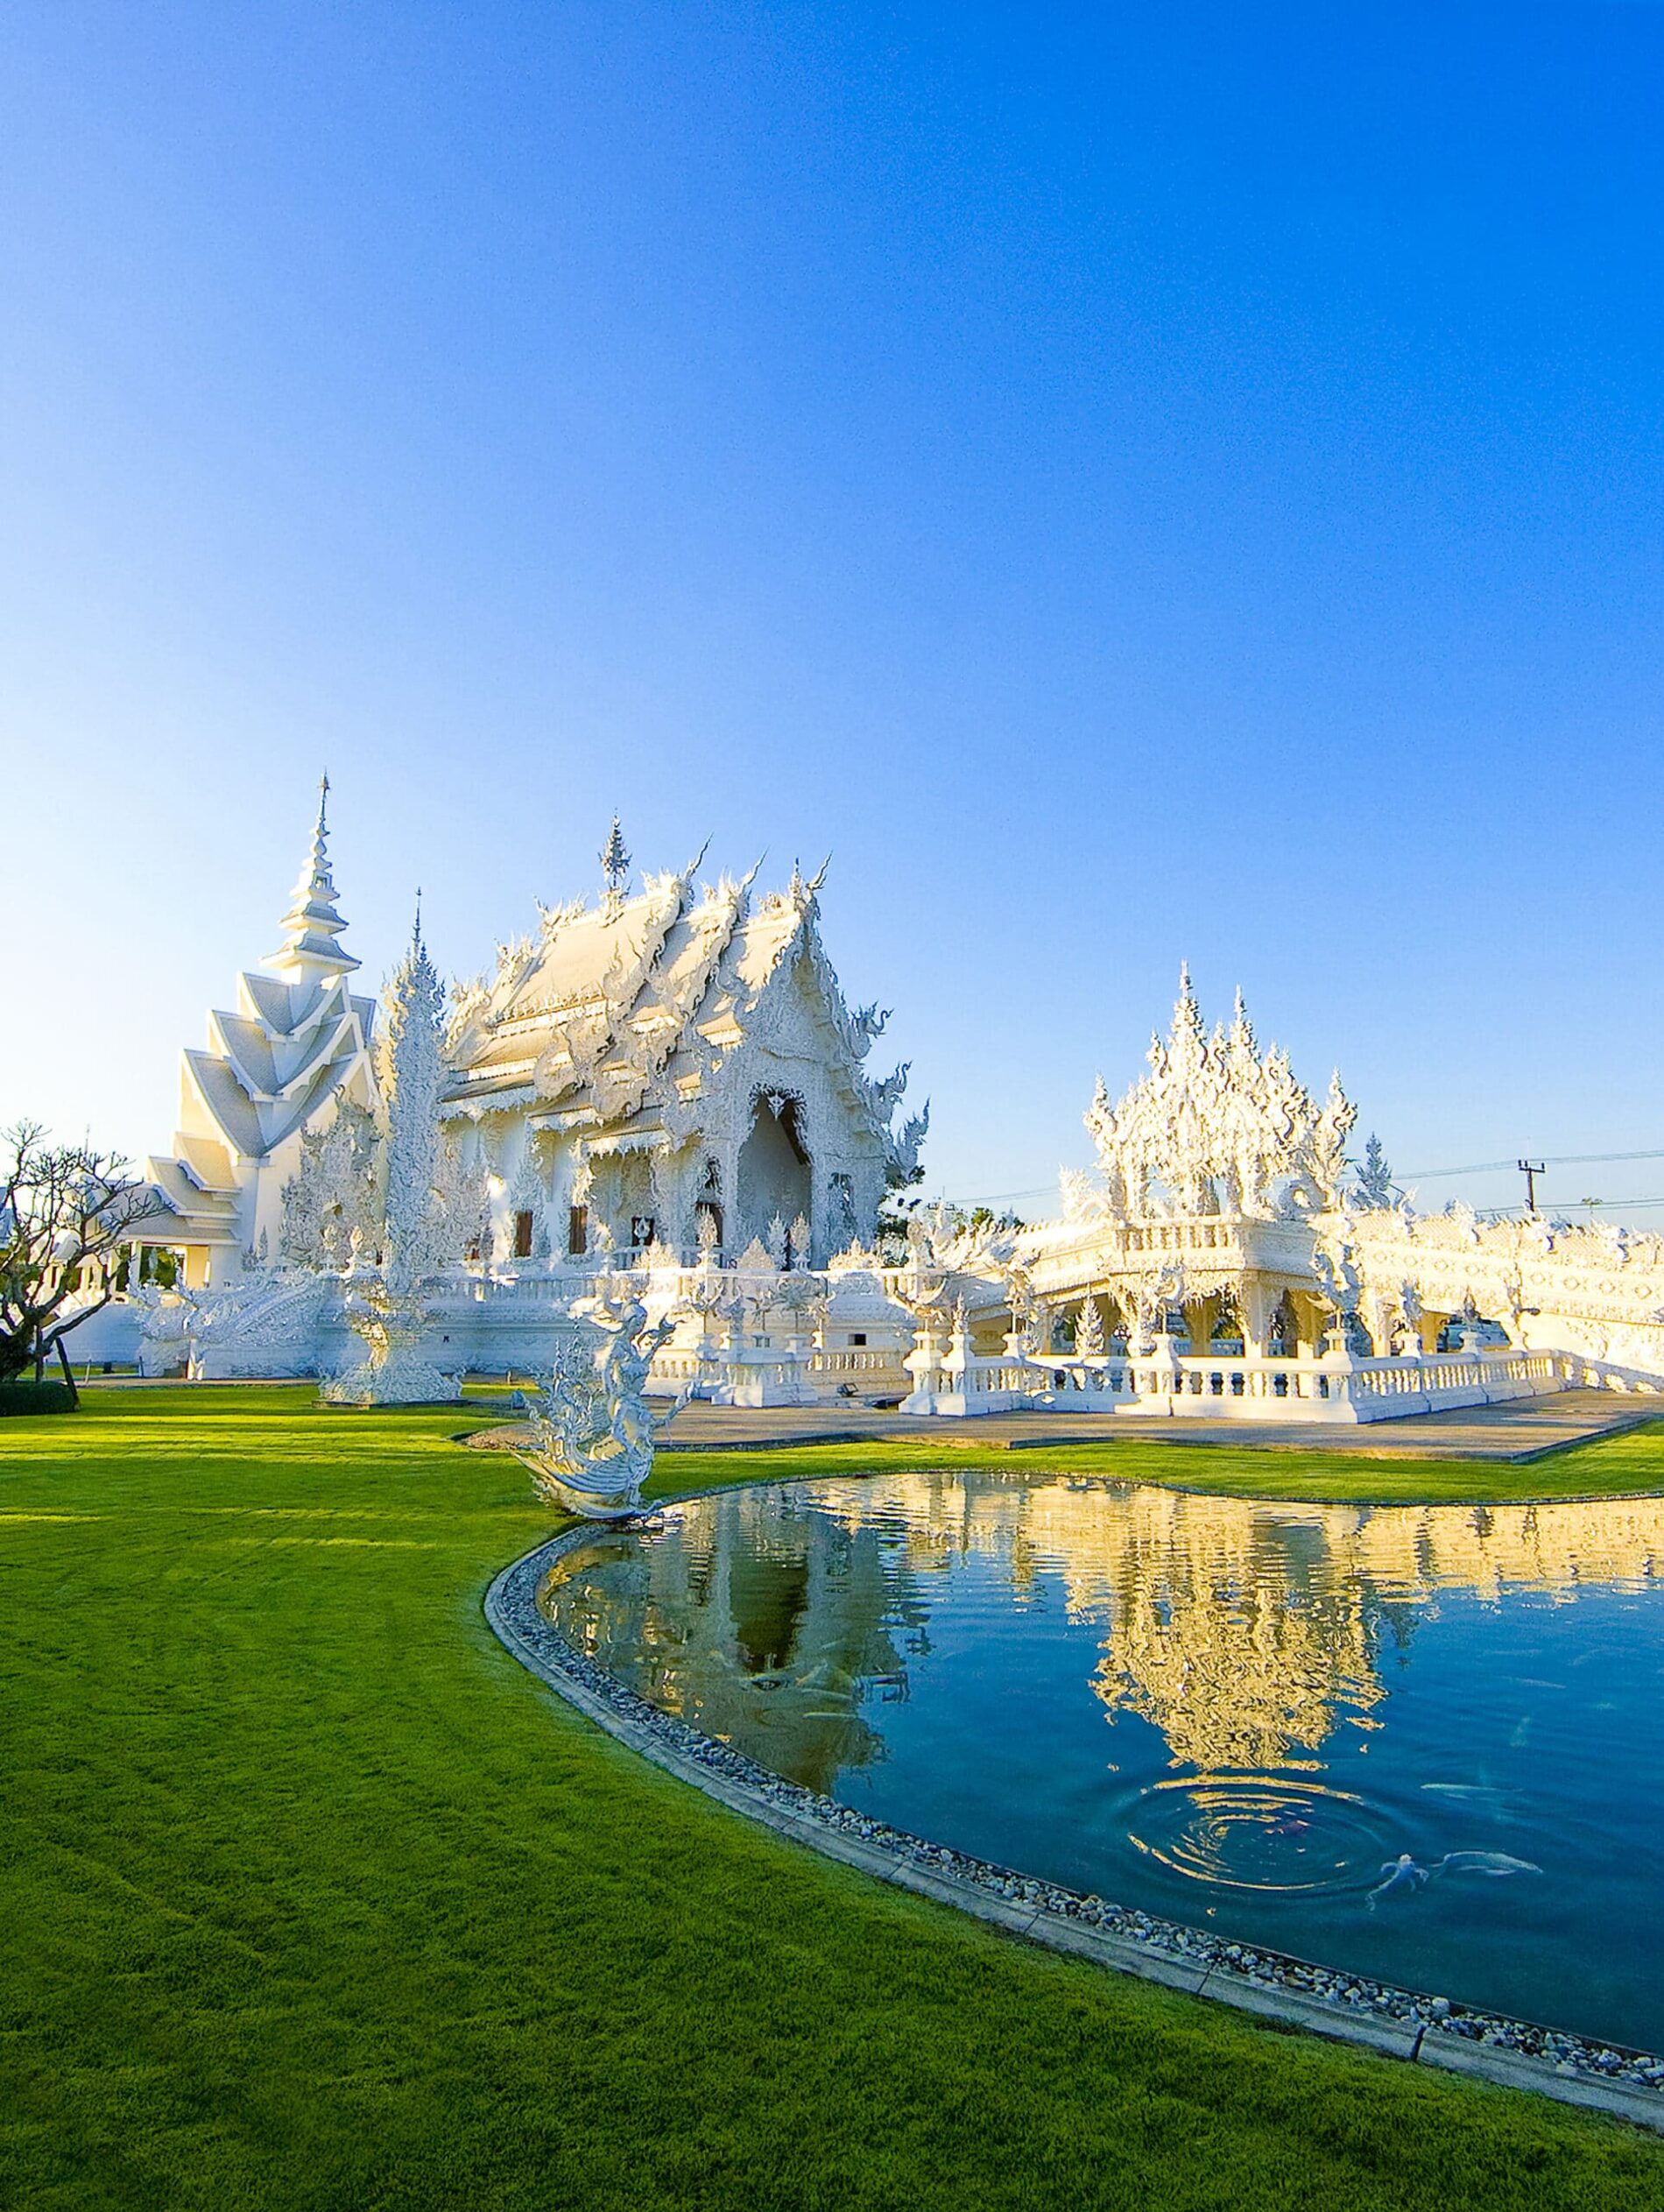 Thai Arts-Wat Rong Khun-Chiang Rai-137PO_1